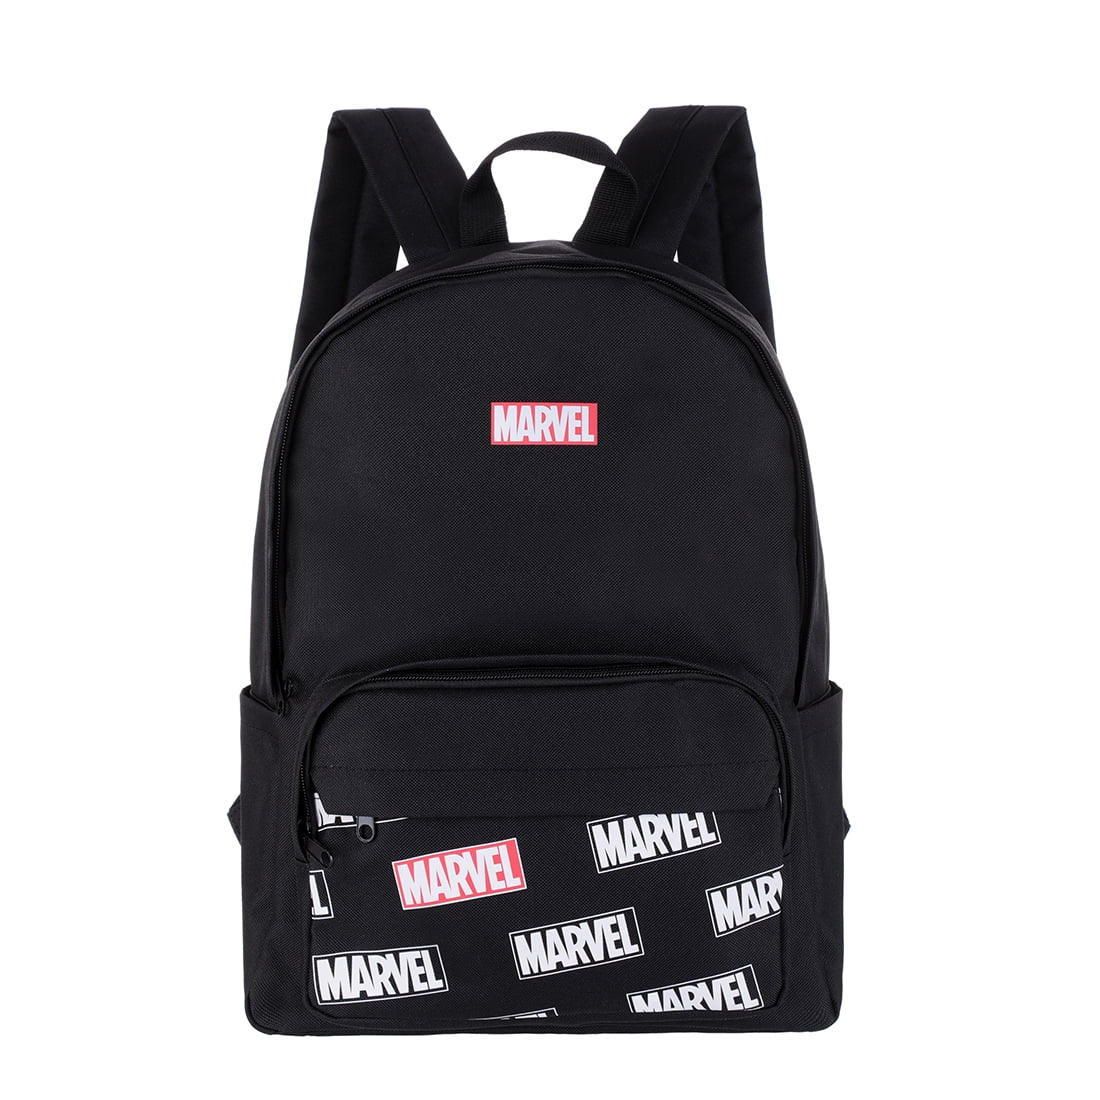 MINISO Marvel Backpack Superhero Printed for Boys & for School Travel, White Black - Walmart.com